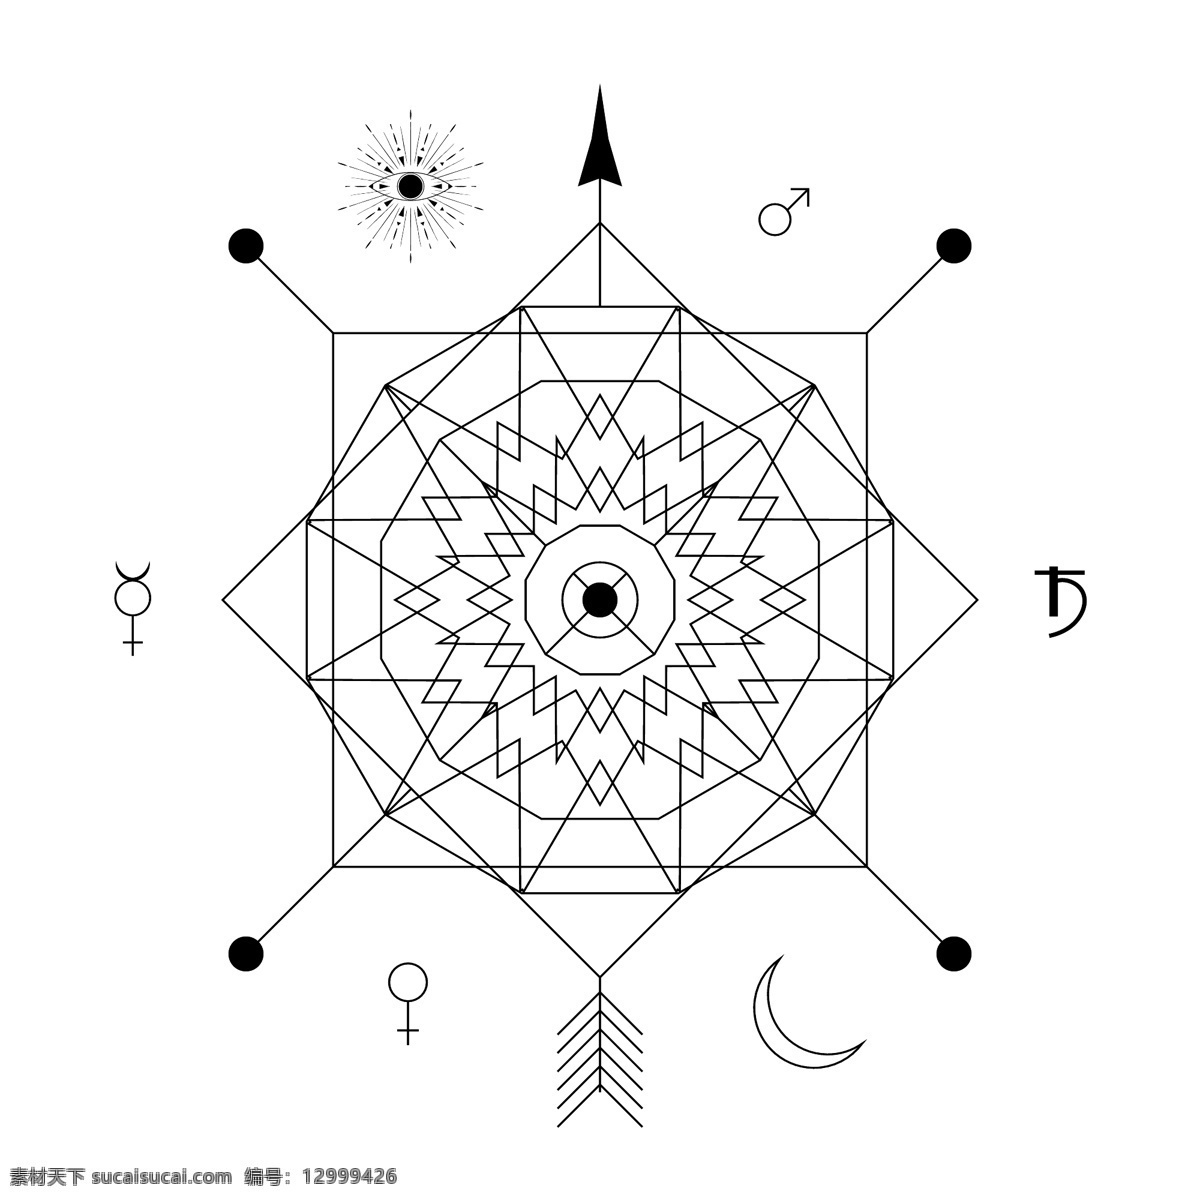 太阳 形状 多边形 创意 法 阵 矢量 坐标 黑白 星辰 线条 几何 科技 法阵 图标